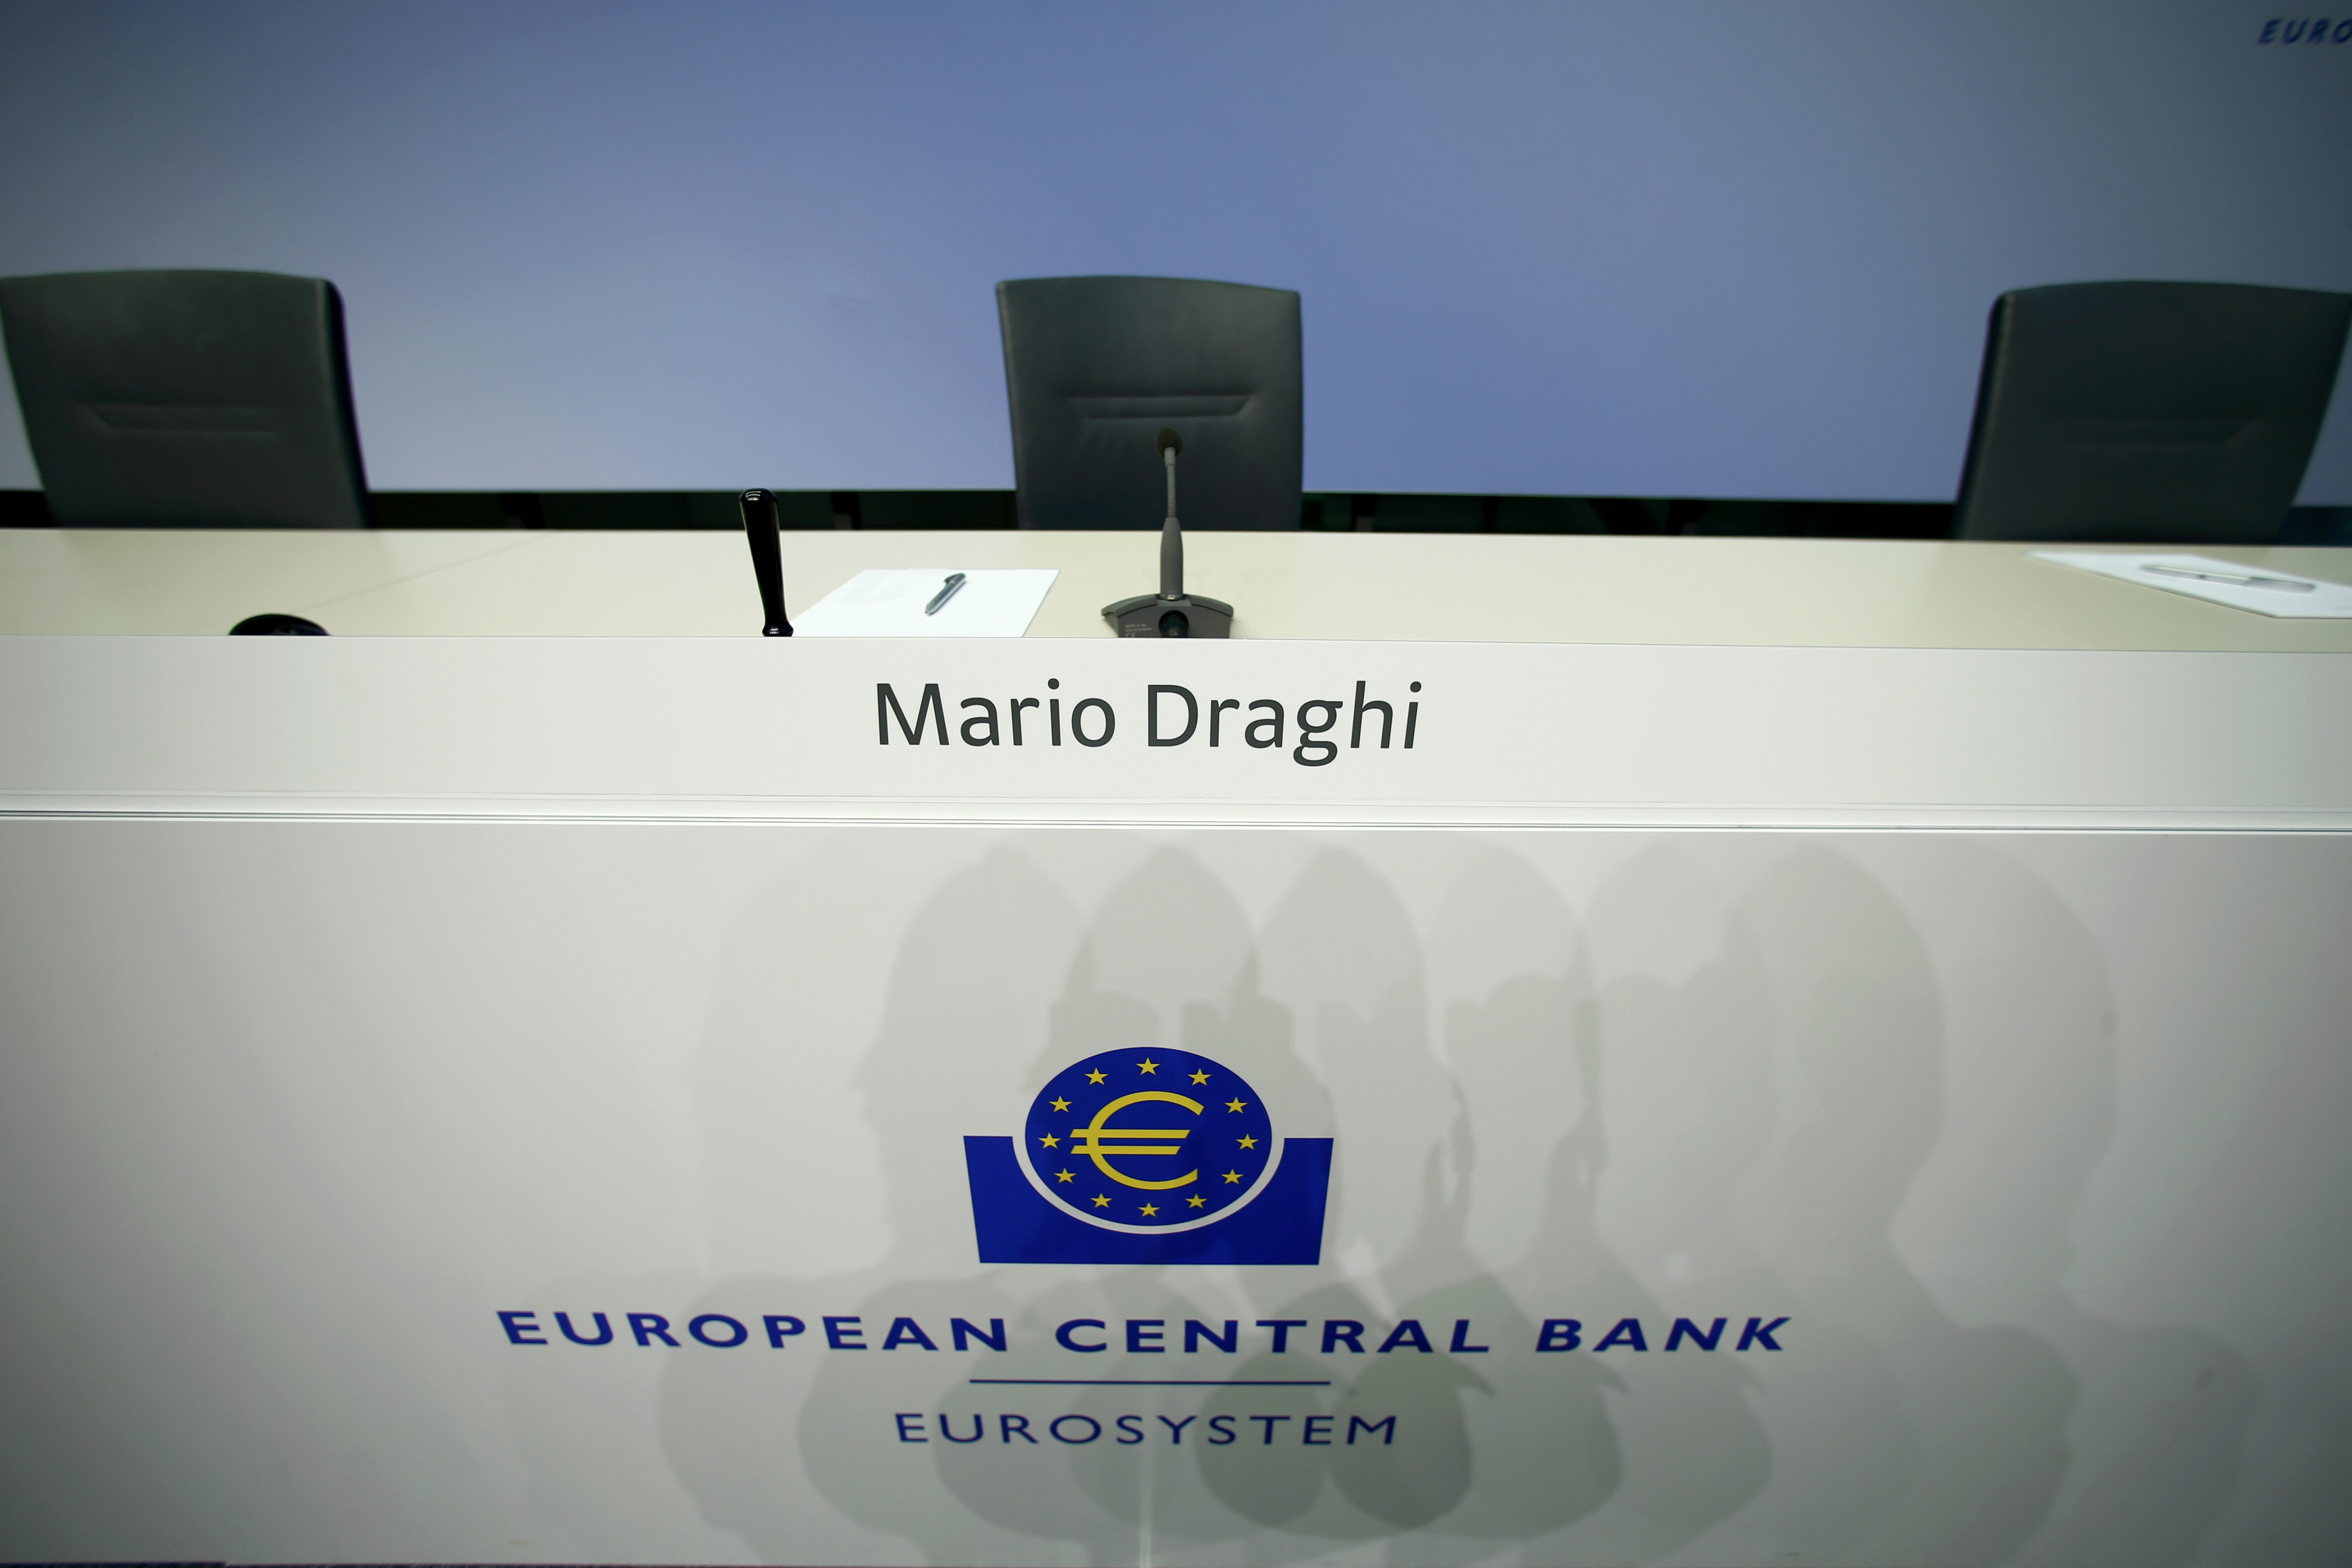 Ιβ Μερς: Πρόωρο να μιλάμε για περιορισμό των έκτακτων μέτρων της ΕΚΤ